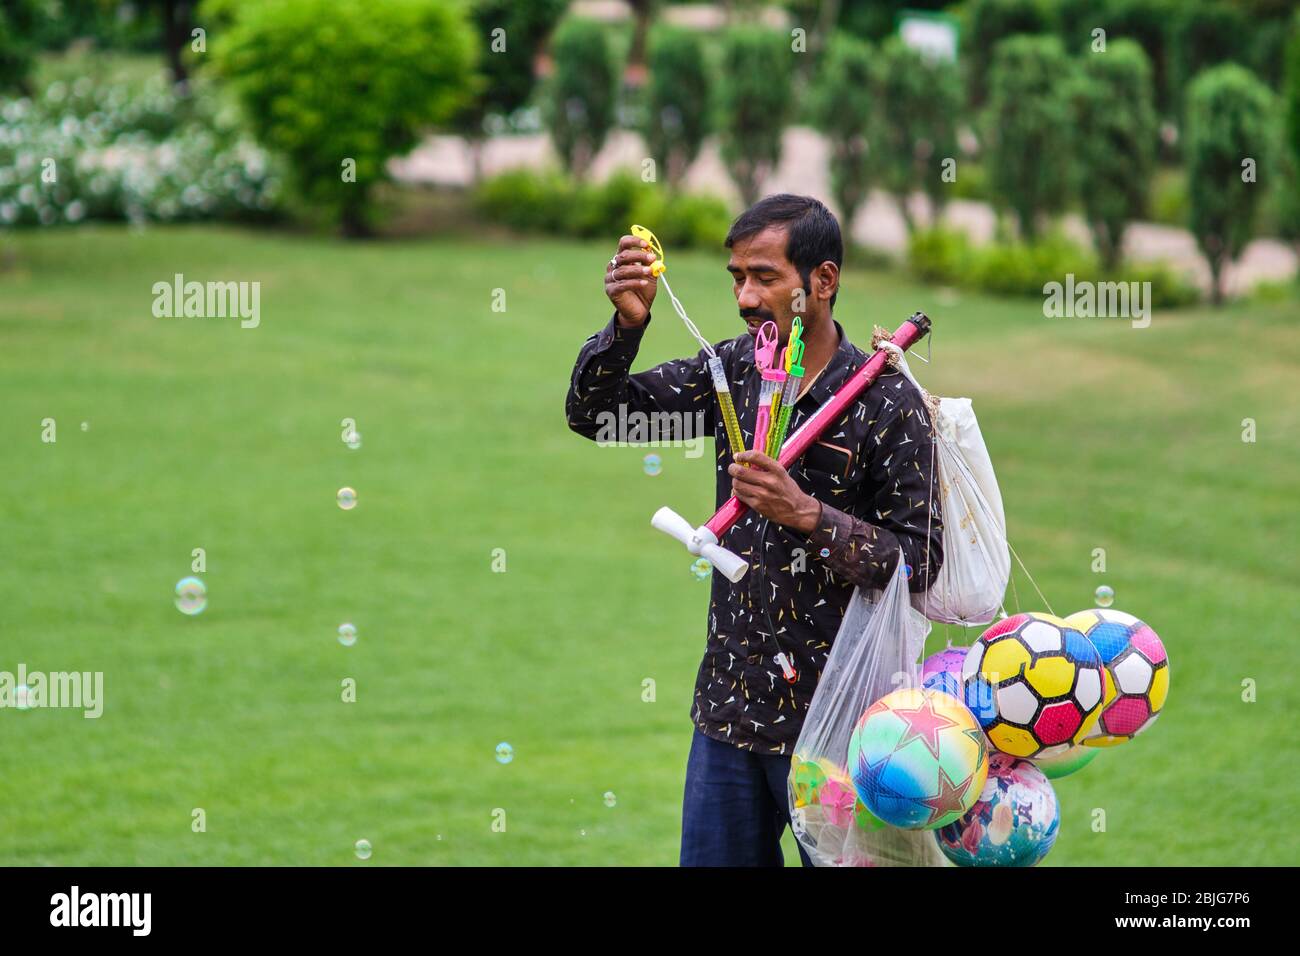 Delhi / India - September 22, 2019: Man selling toys in Lodhi Gardens in New Delhi, India Stock Photo